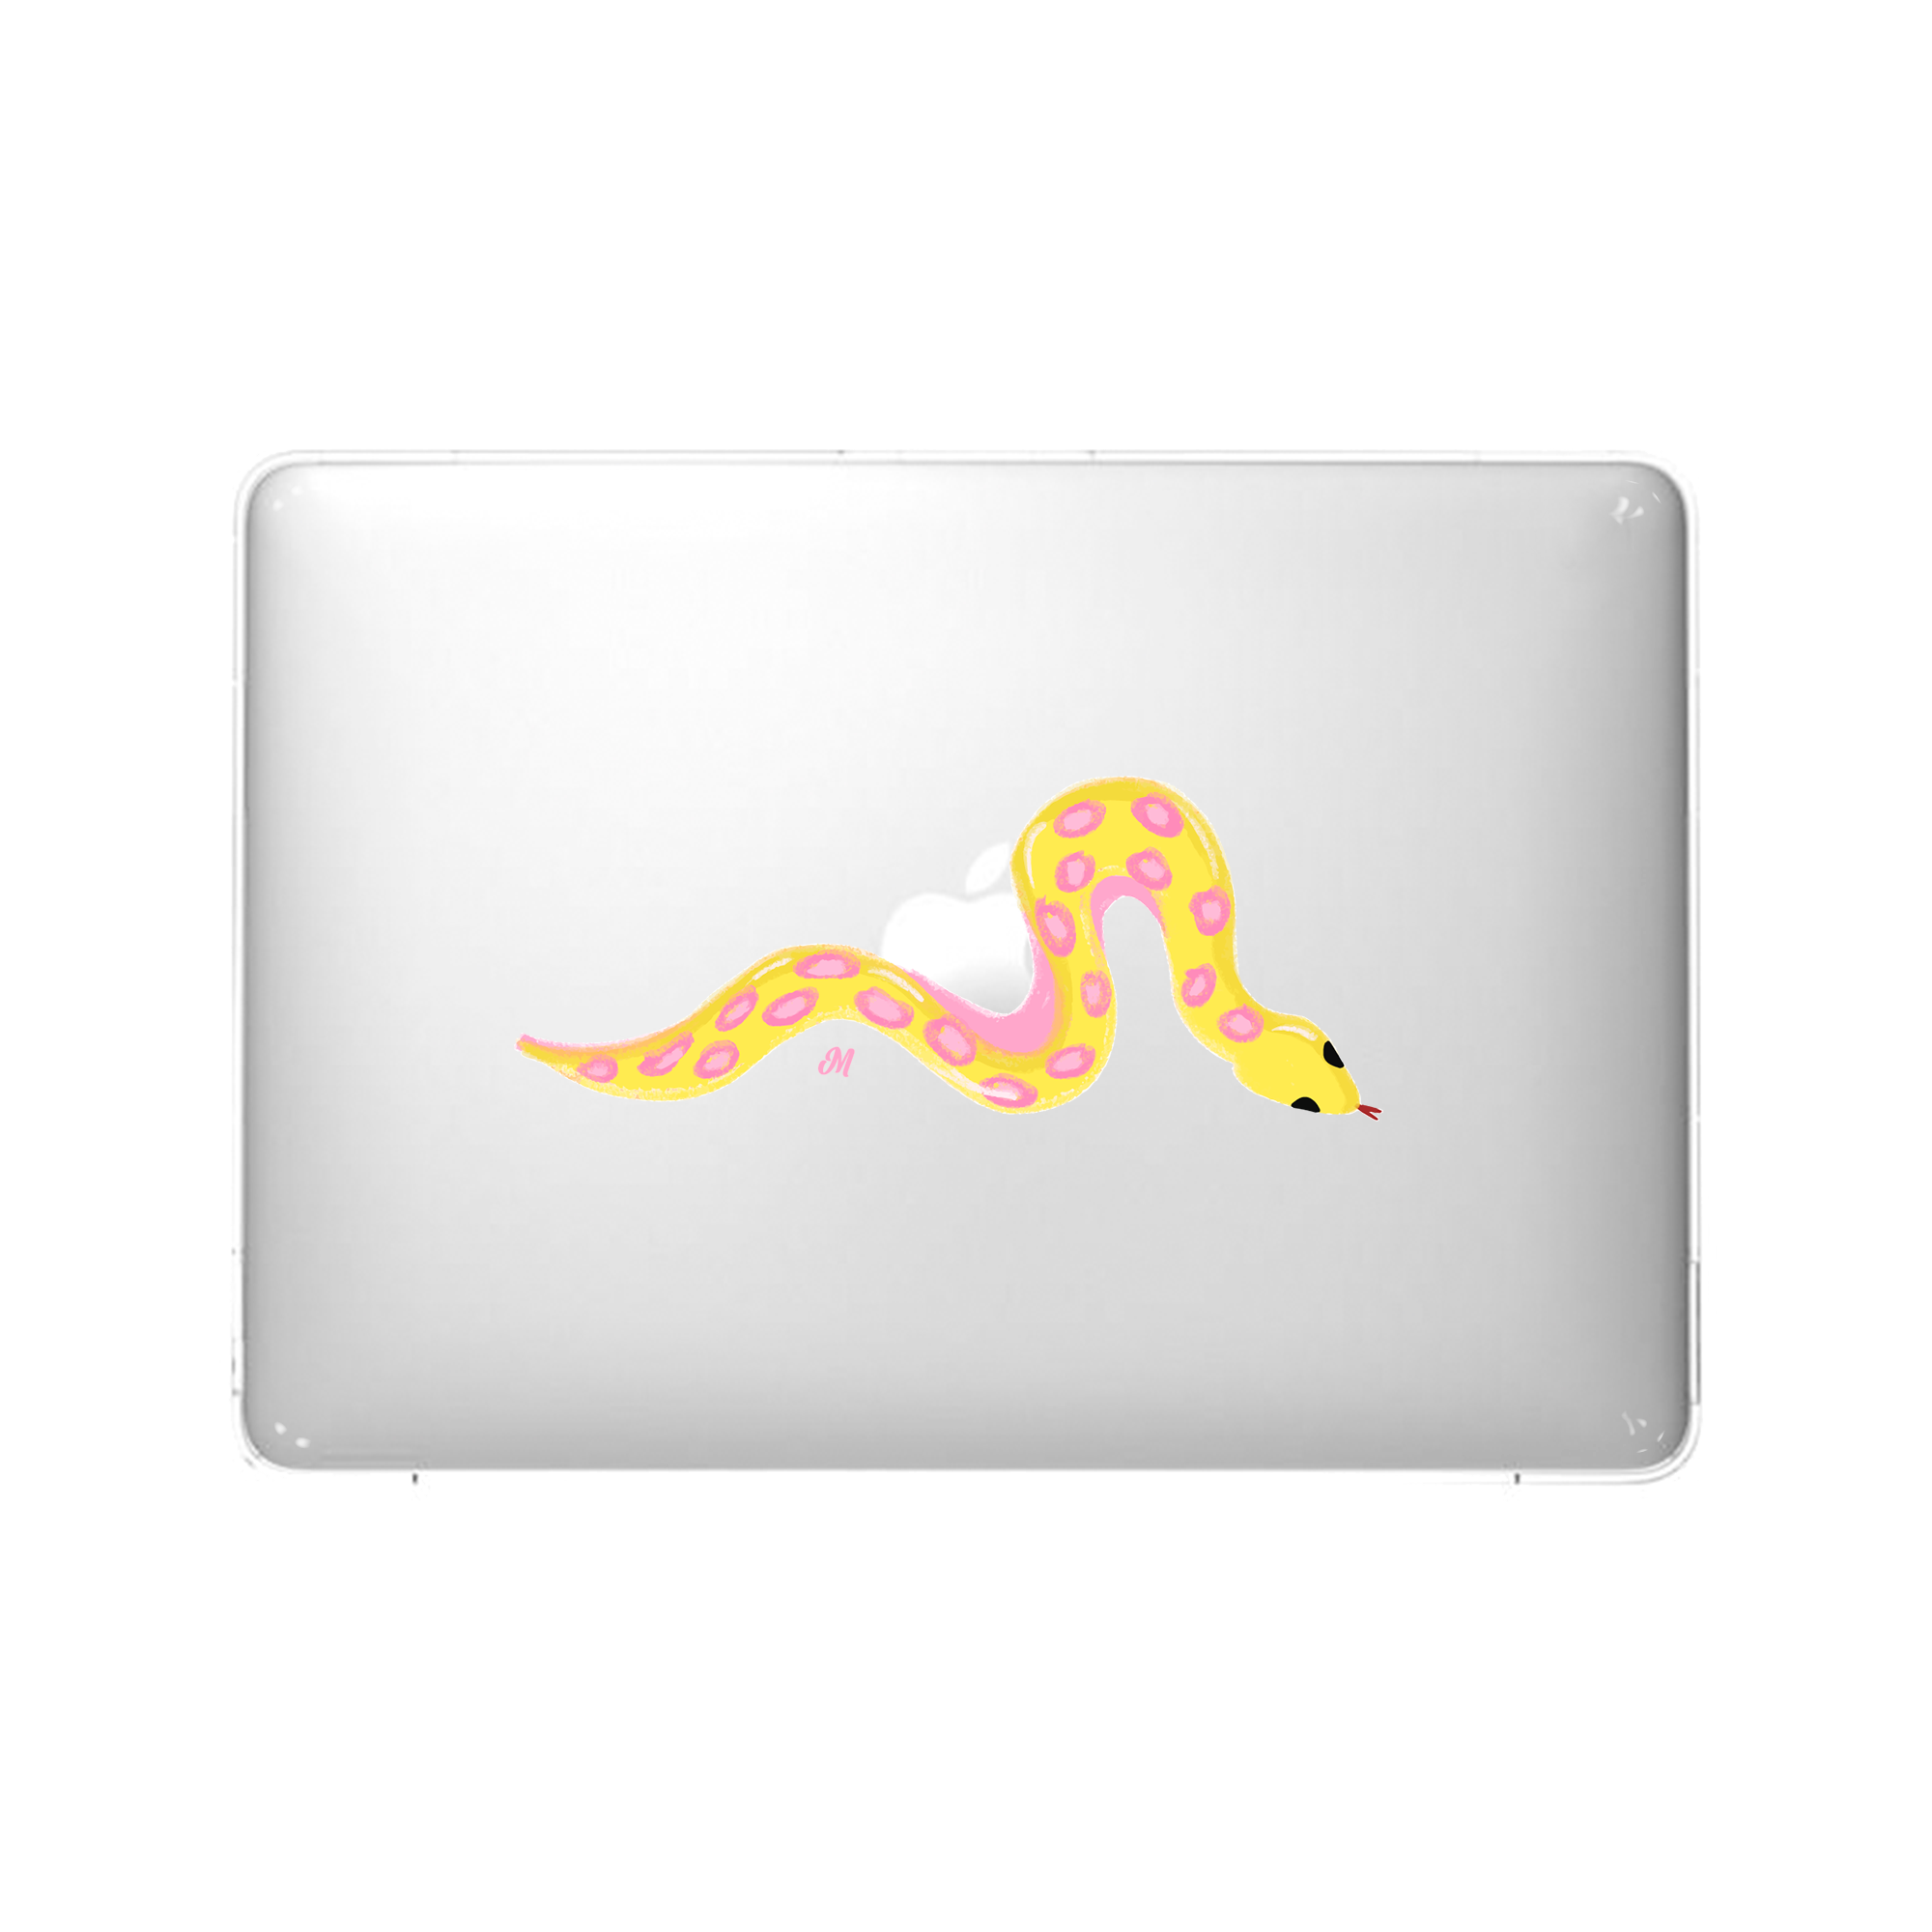 Serpientes Coloridas MacBook Case - Mandala Cases